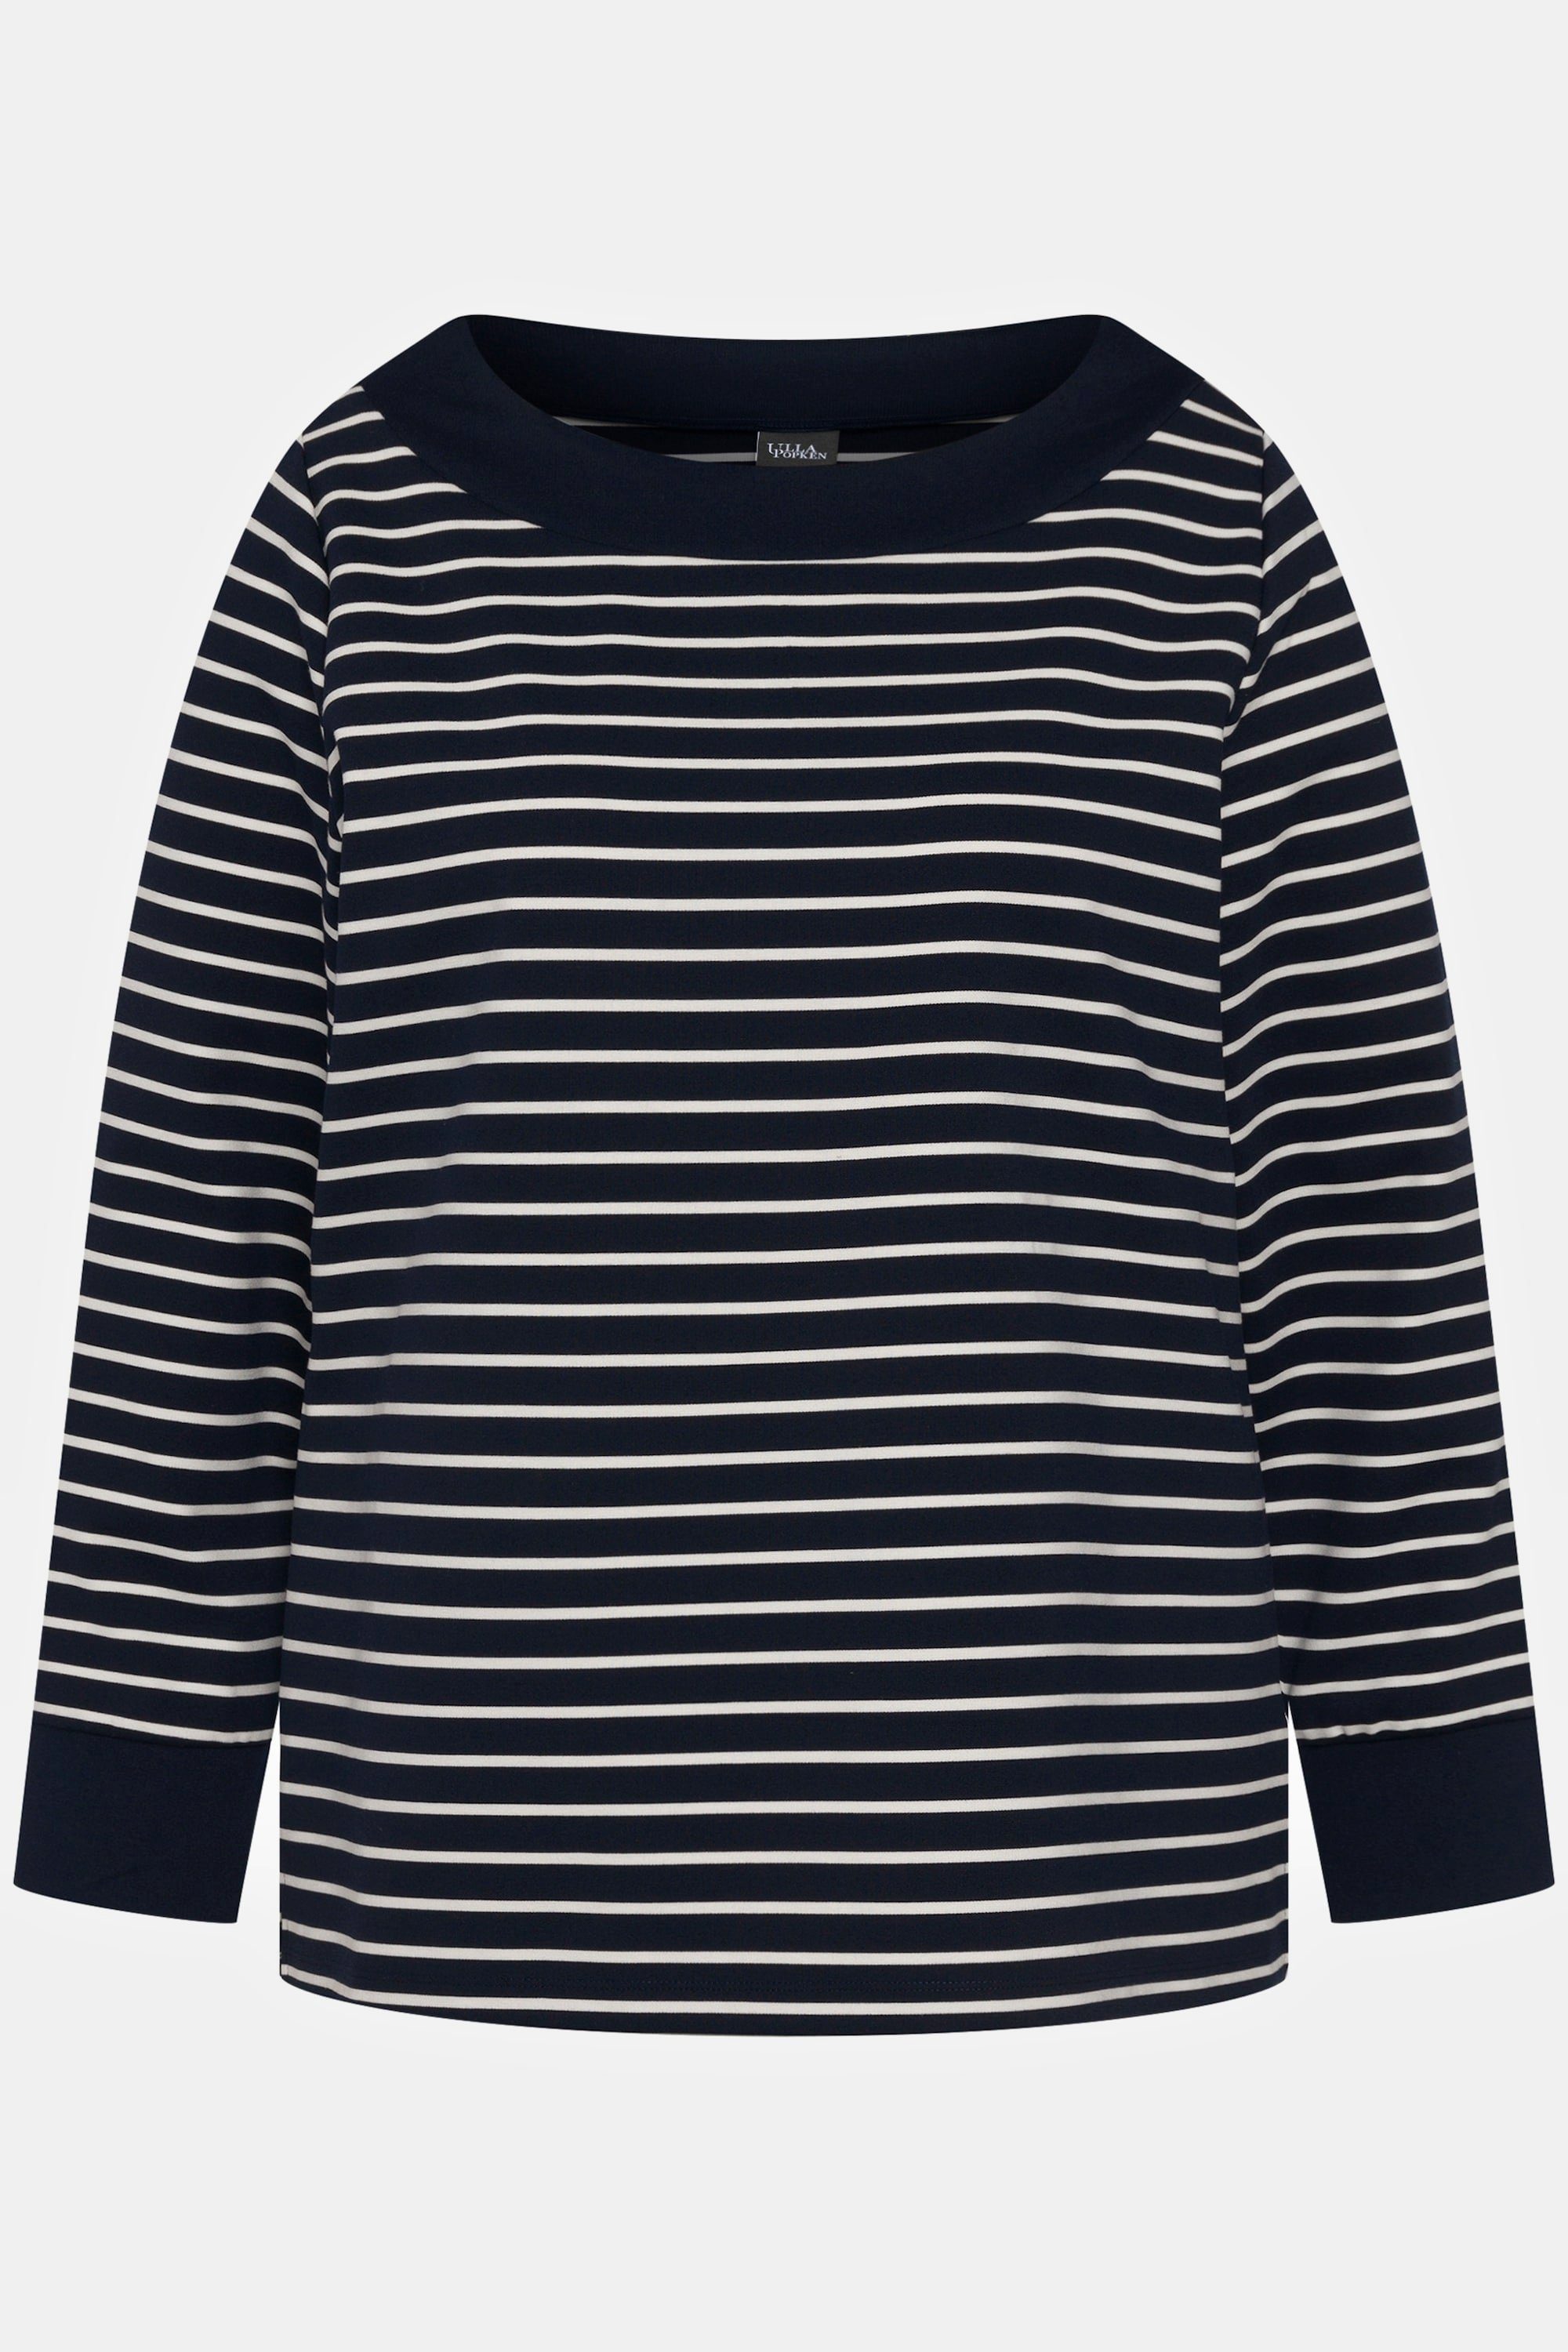 Streifen Sweatshirt Popken U-Boot-Ausschnitt Sweatshirt Langarm Ulla